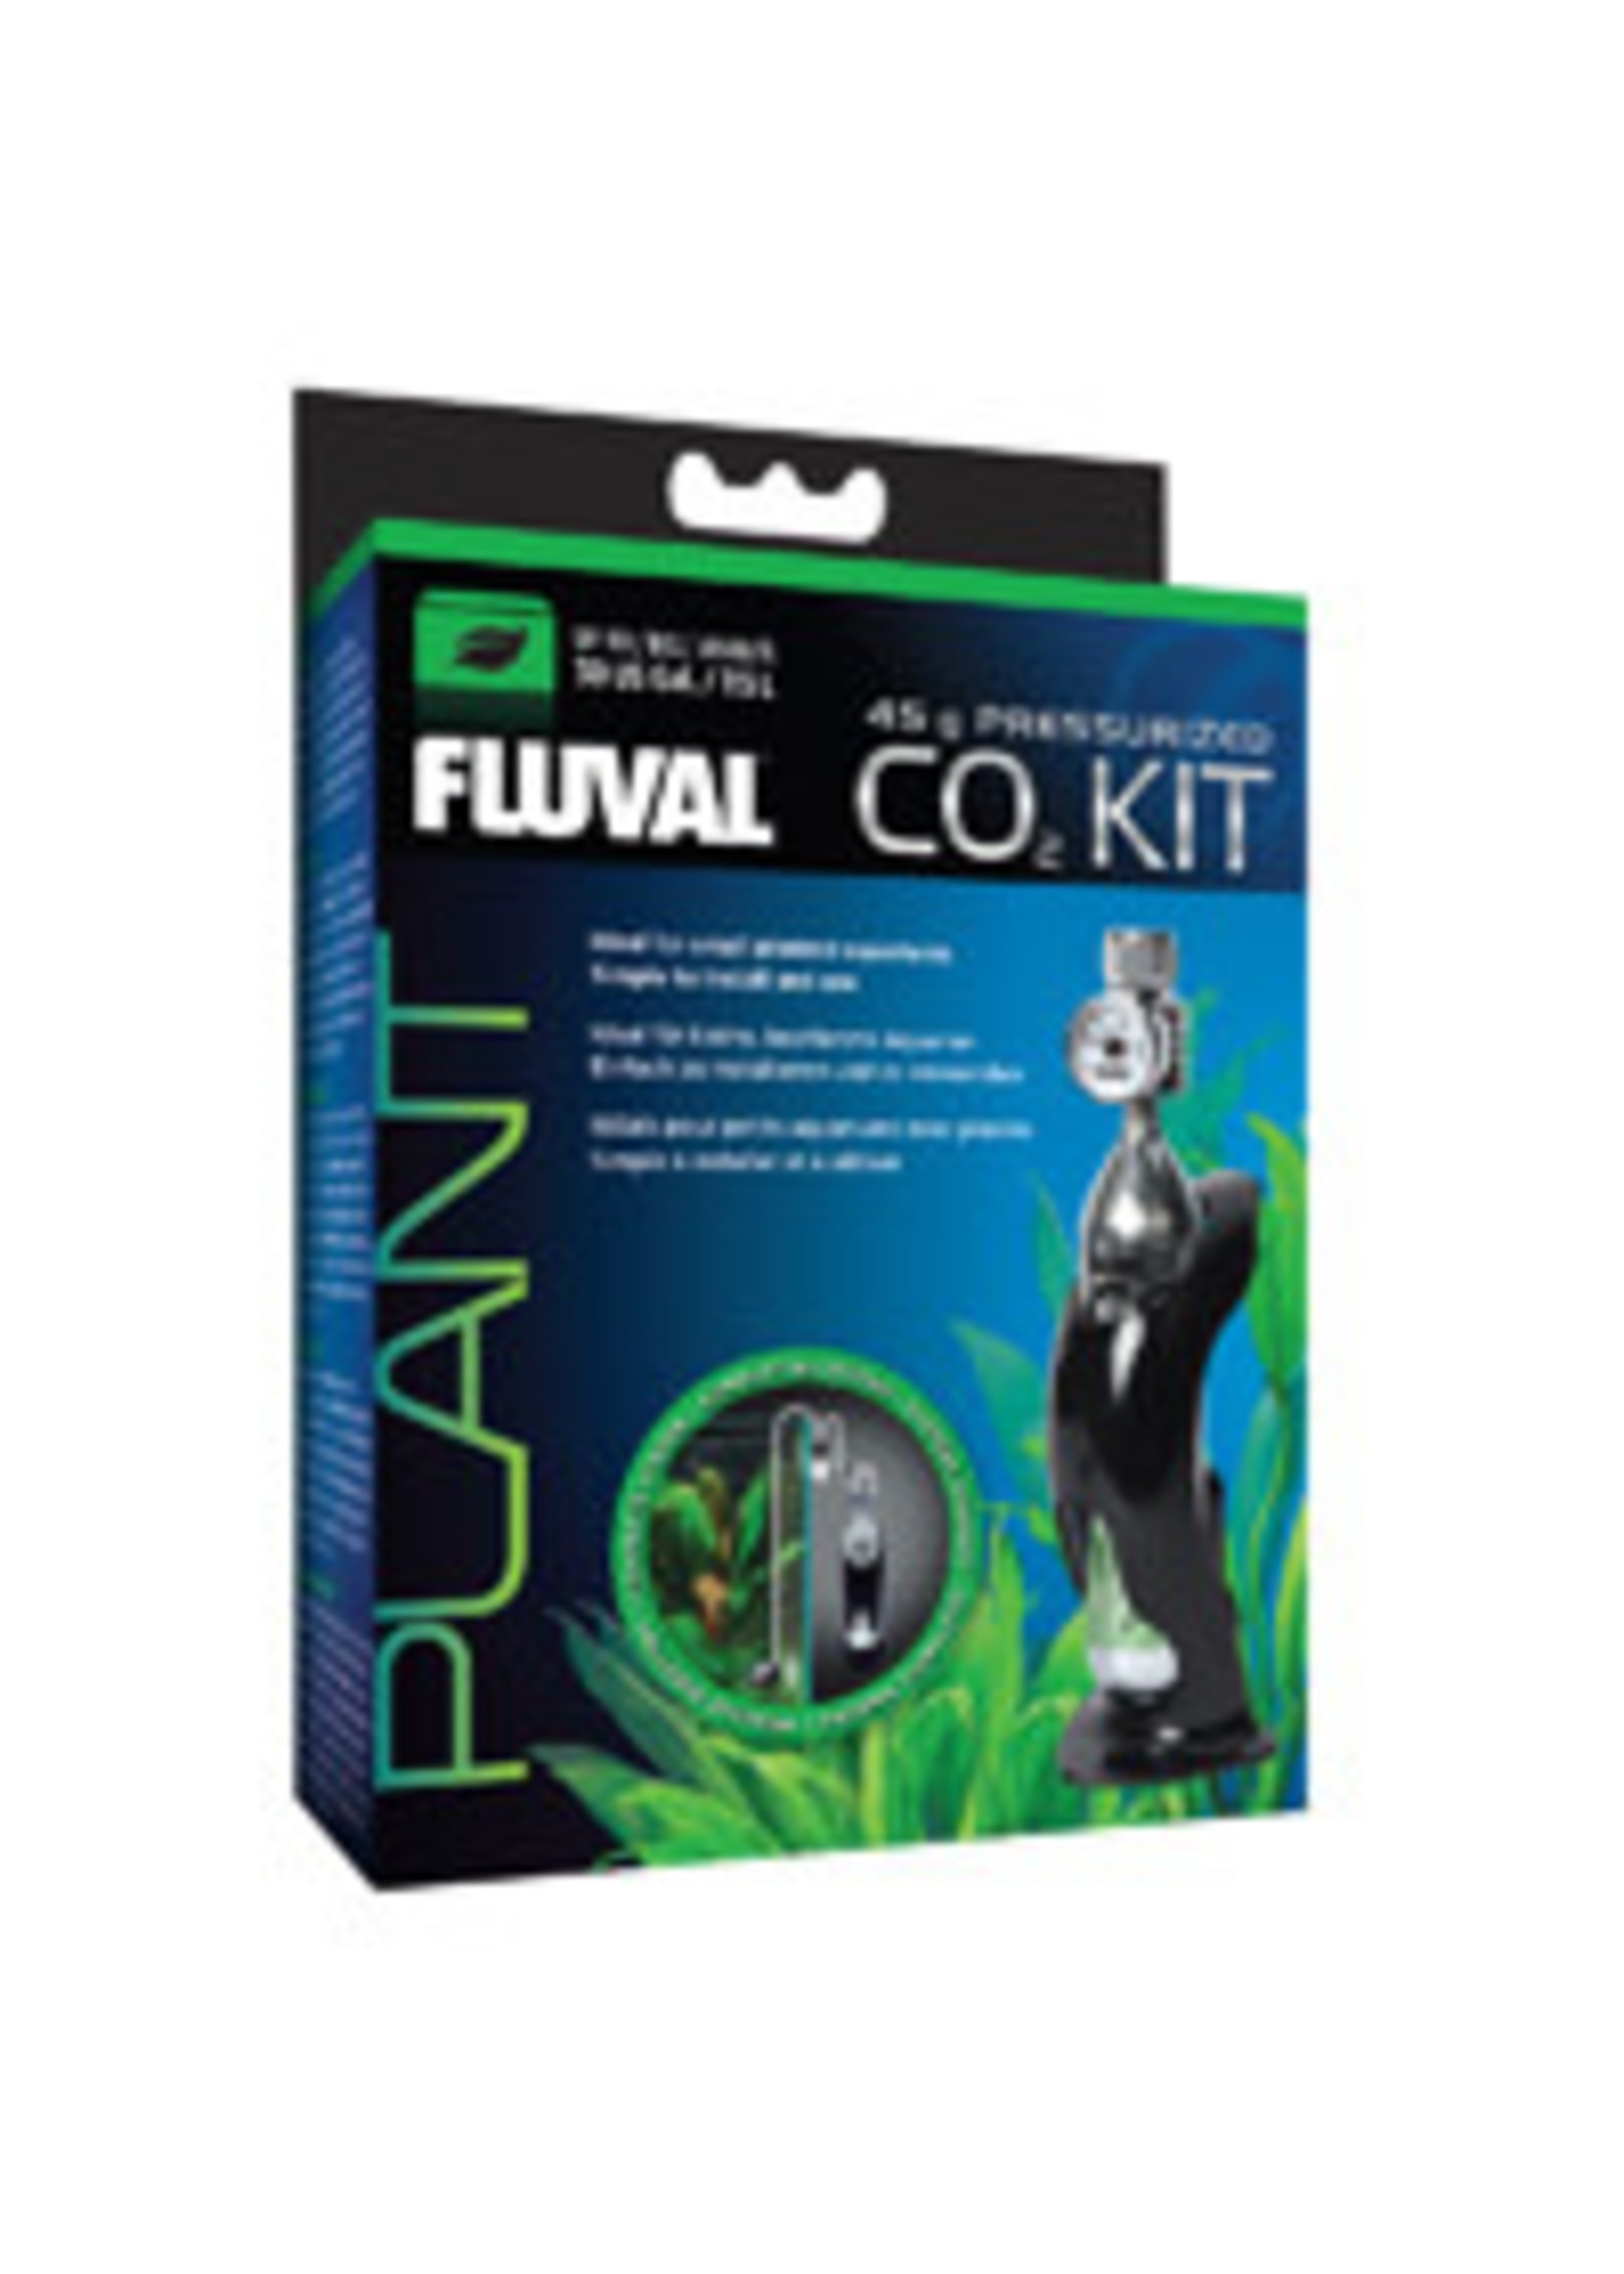 Fluval PRESSURE 45 G CO2 KIT